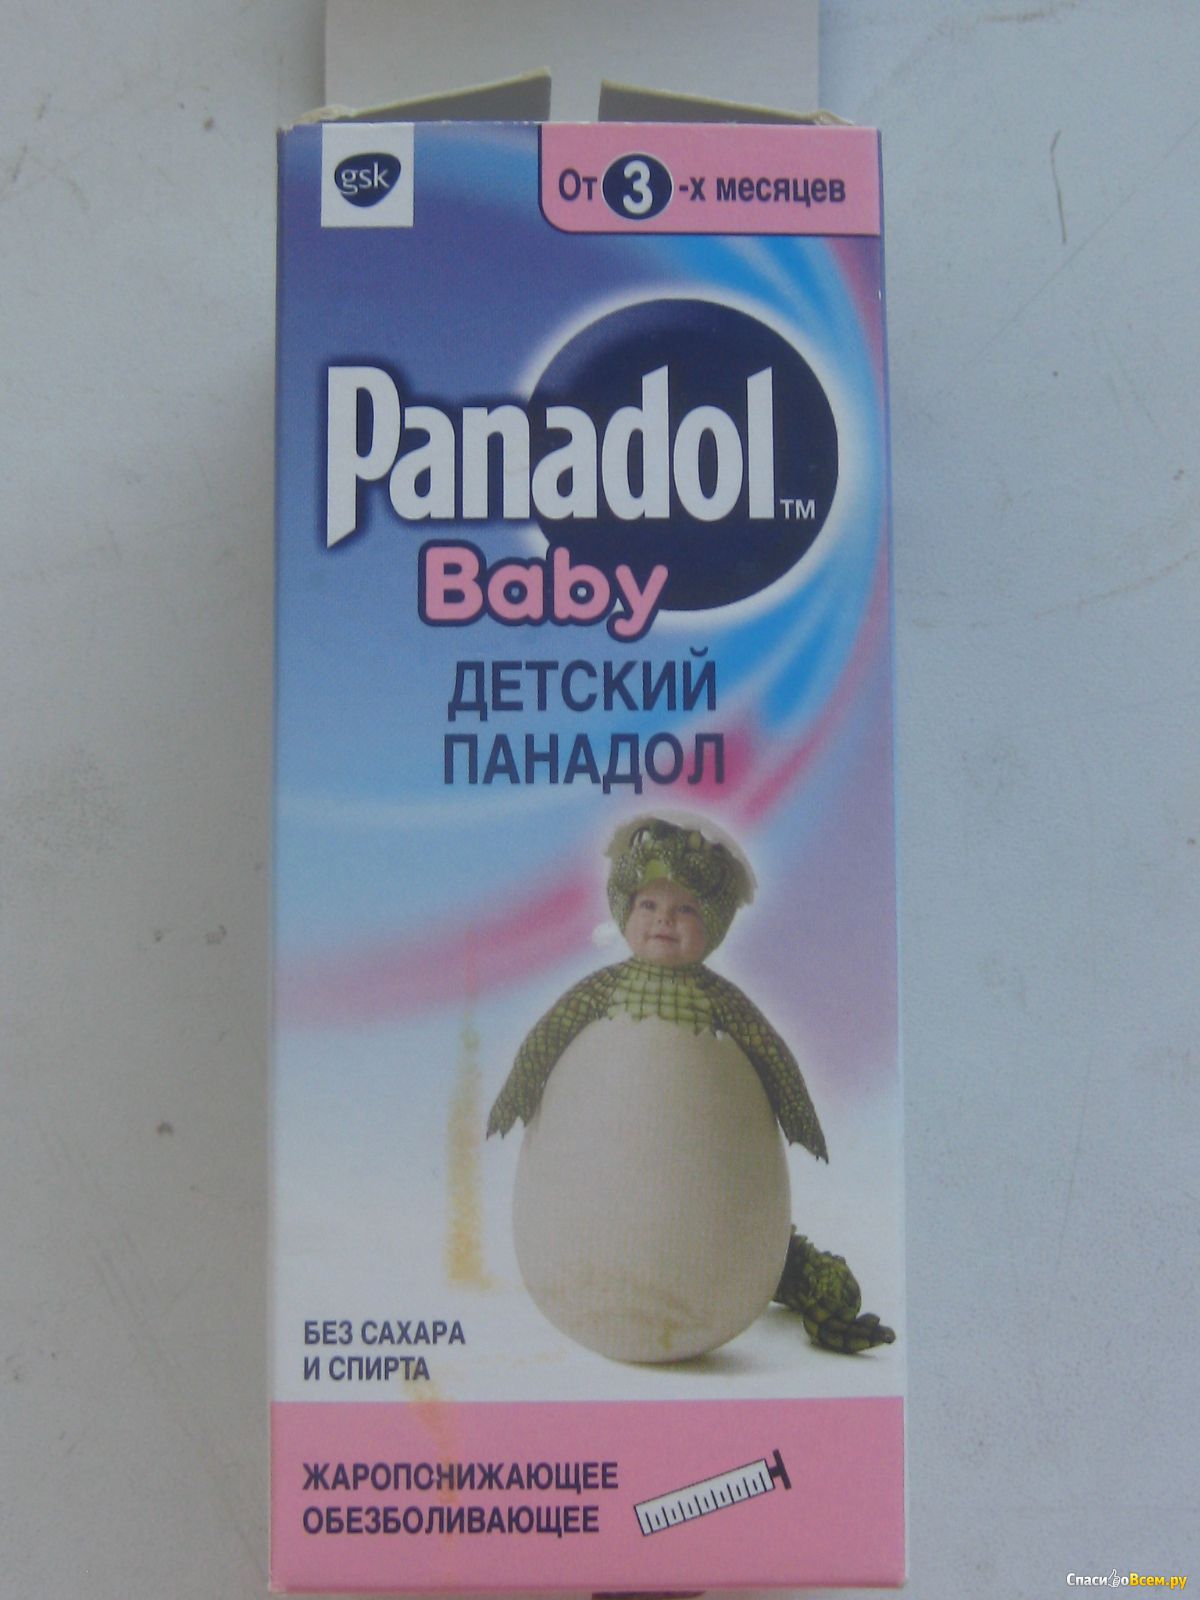 Отзыв про Детский панадол Panadol Baby: 